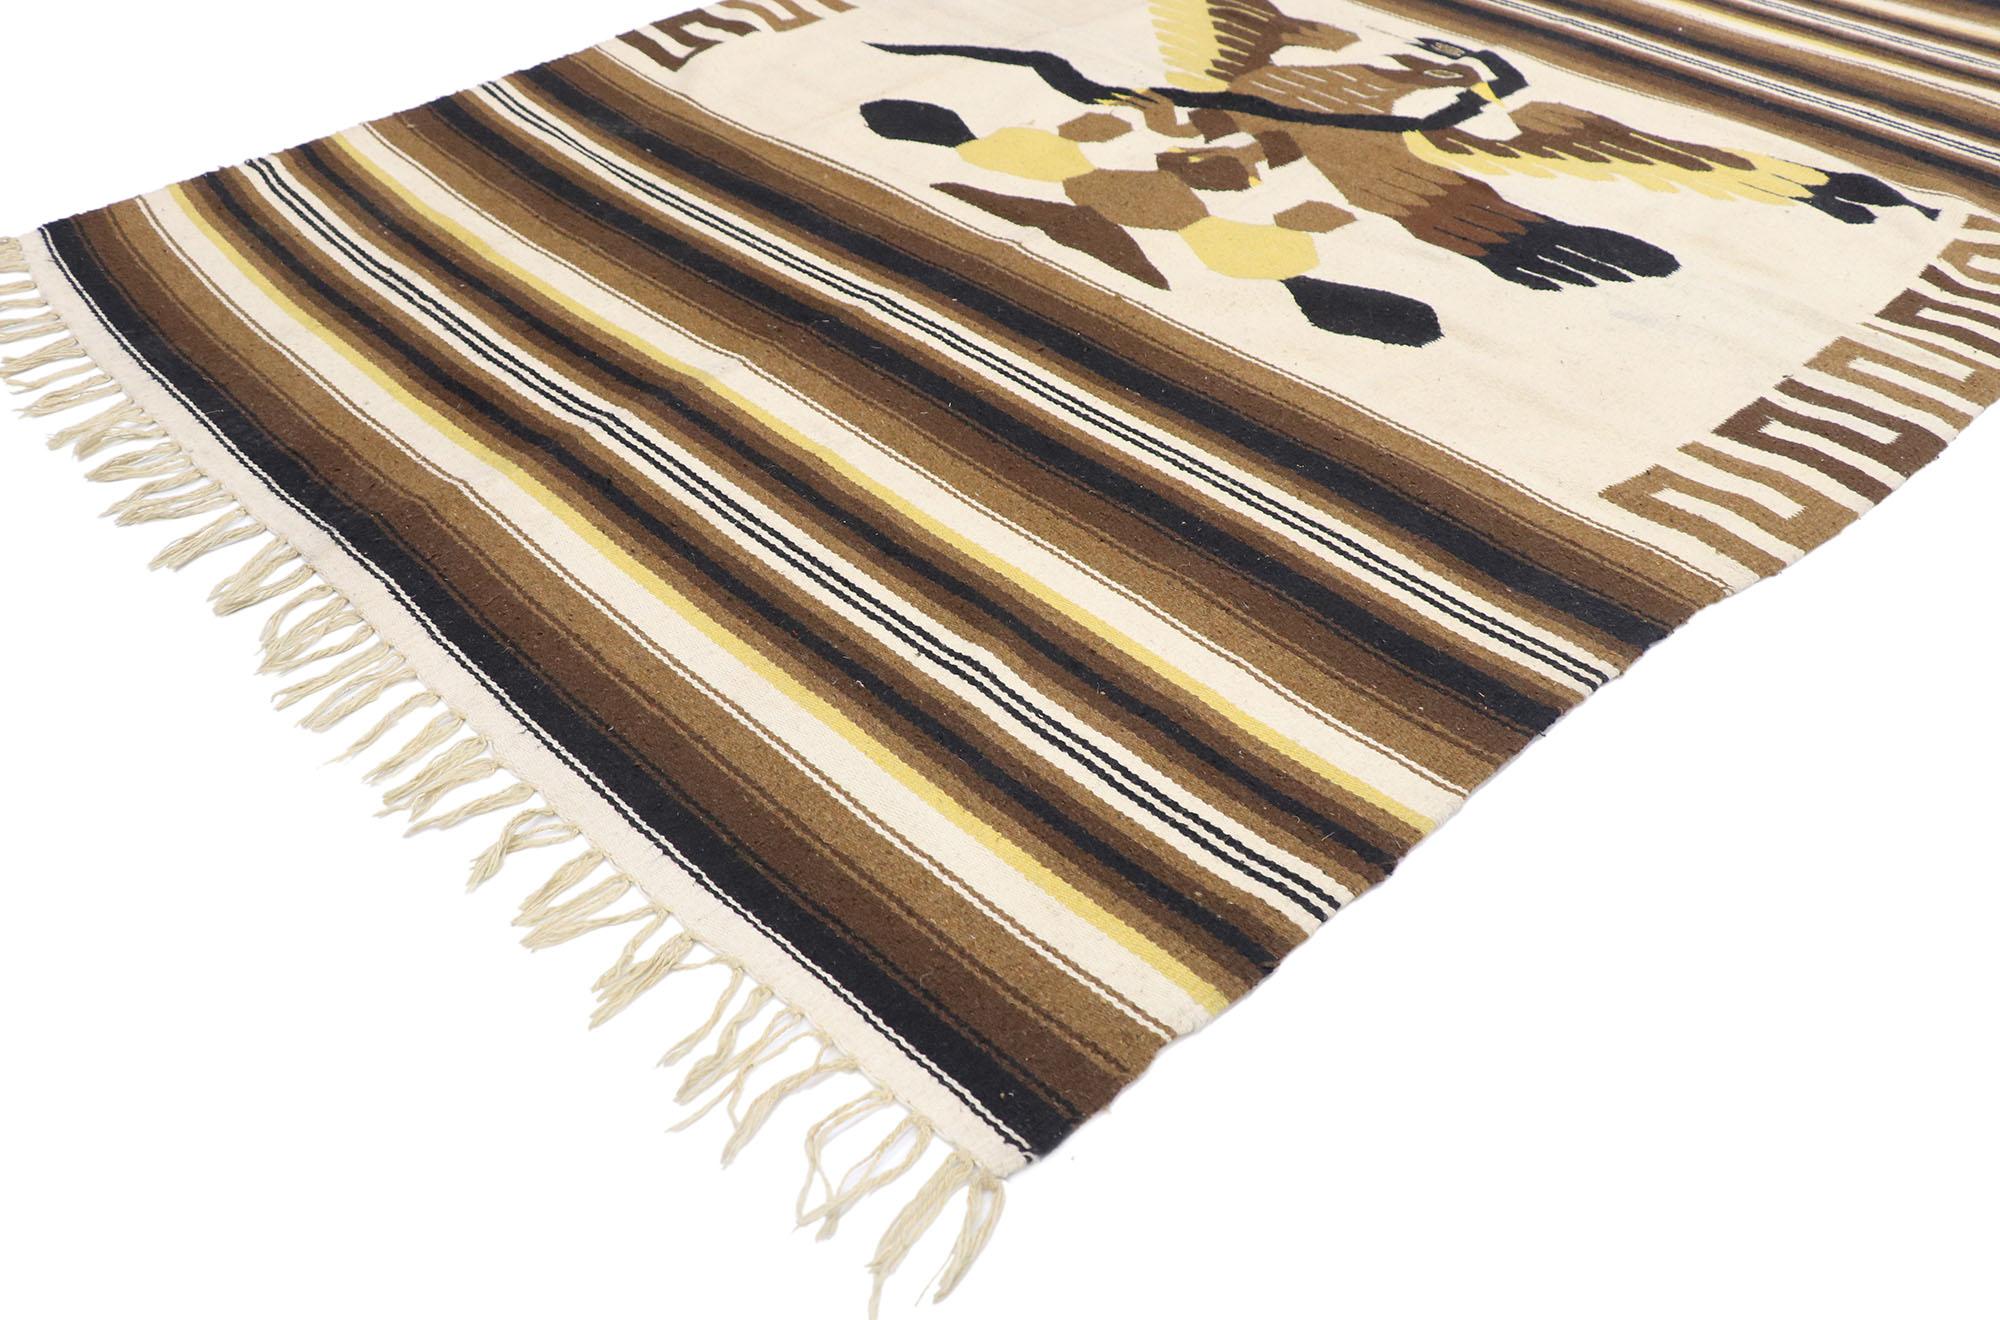 77802, tapis vintage mexicain Kilim Serape Blanket avec style tribal. Avec son design expressif et audacieux, ses détails et sa texture incroyables, cette couverture Kilim Serape mexicaine vintage en laine tissée à la main est une vision captivante